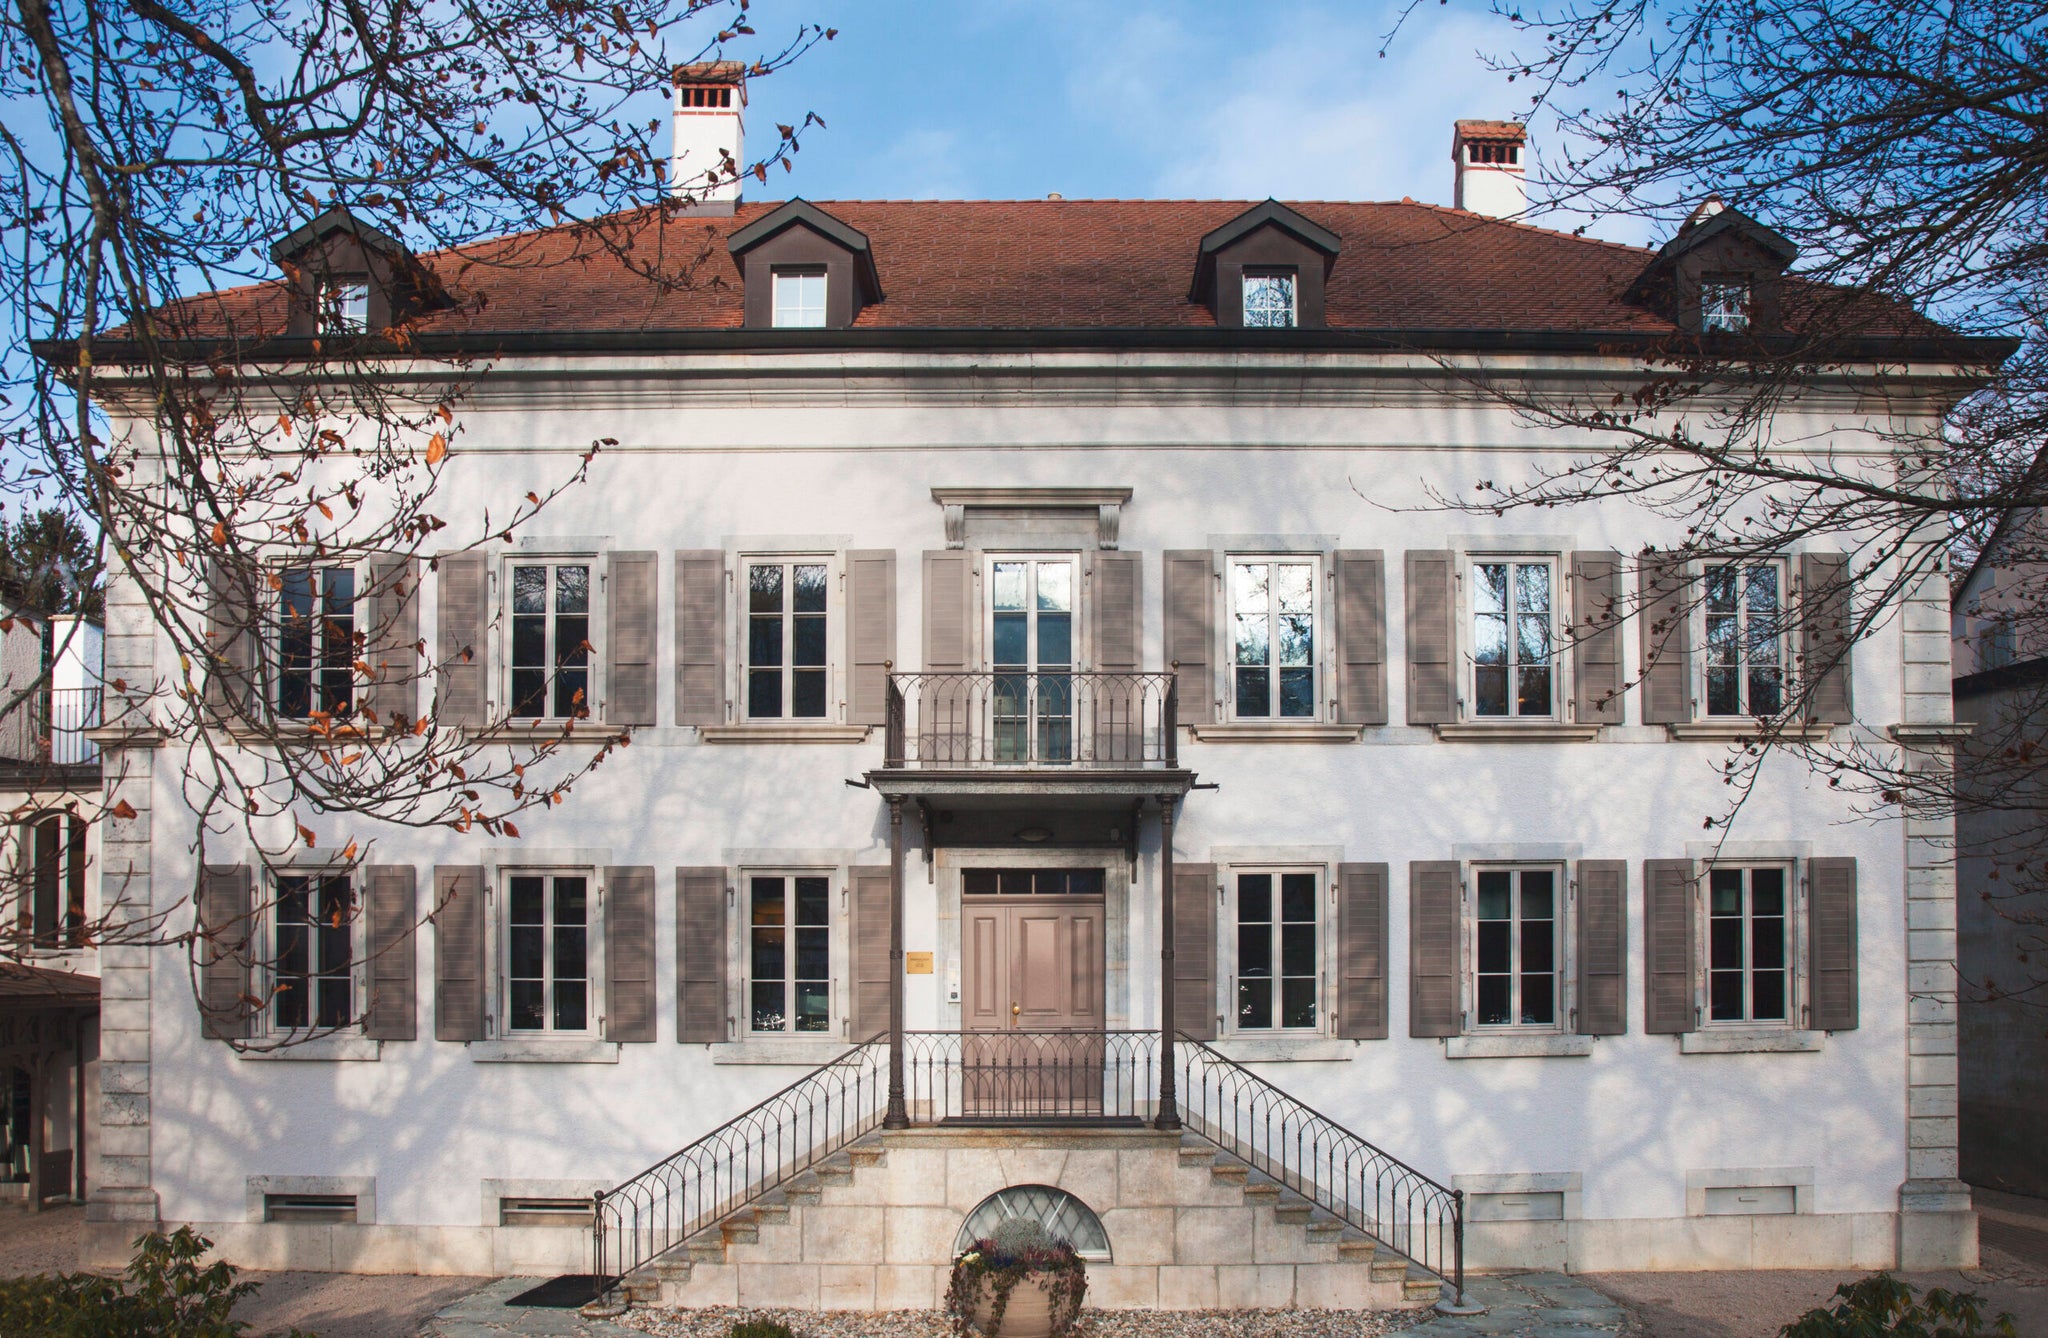 The Parmigiani Fleurier maison, courtesy of Parmigiani Fleurier.